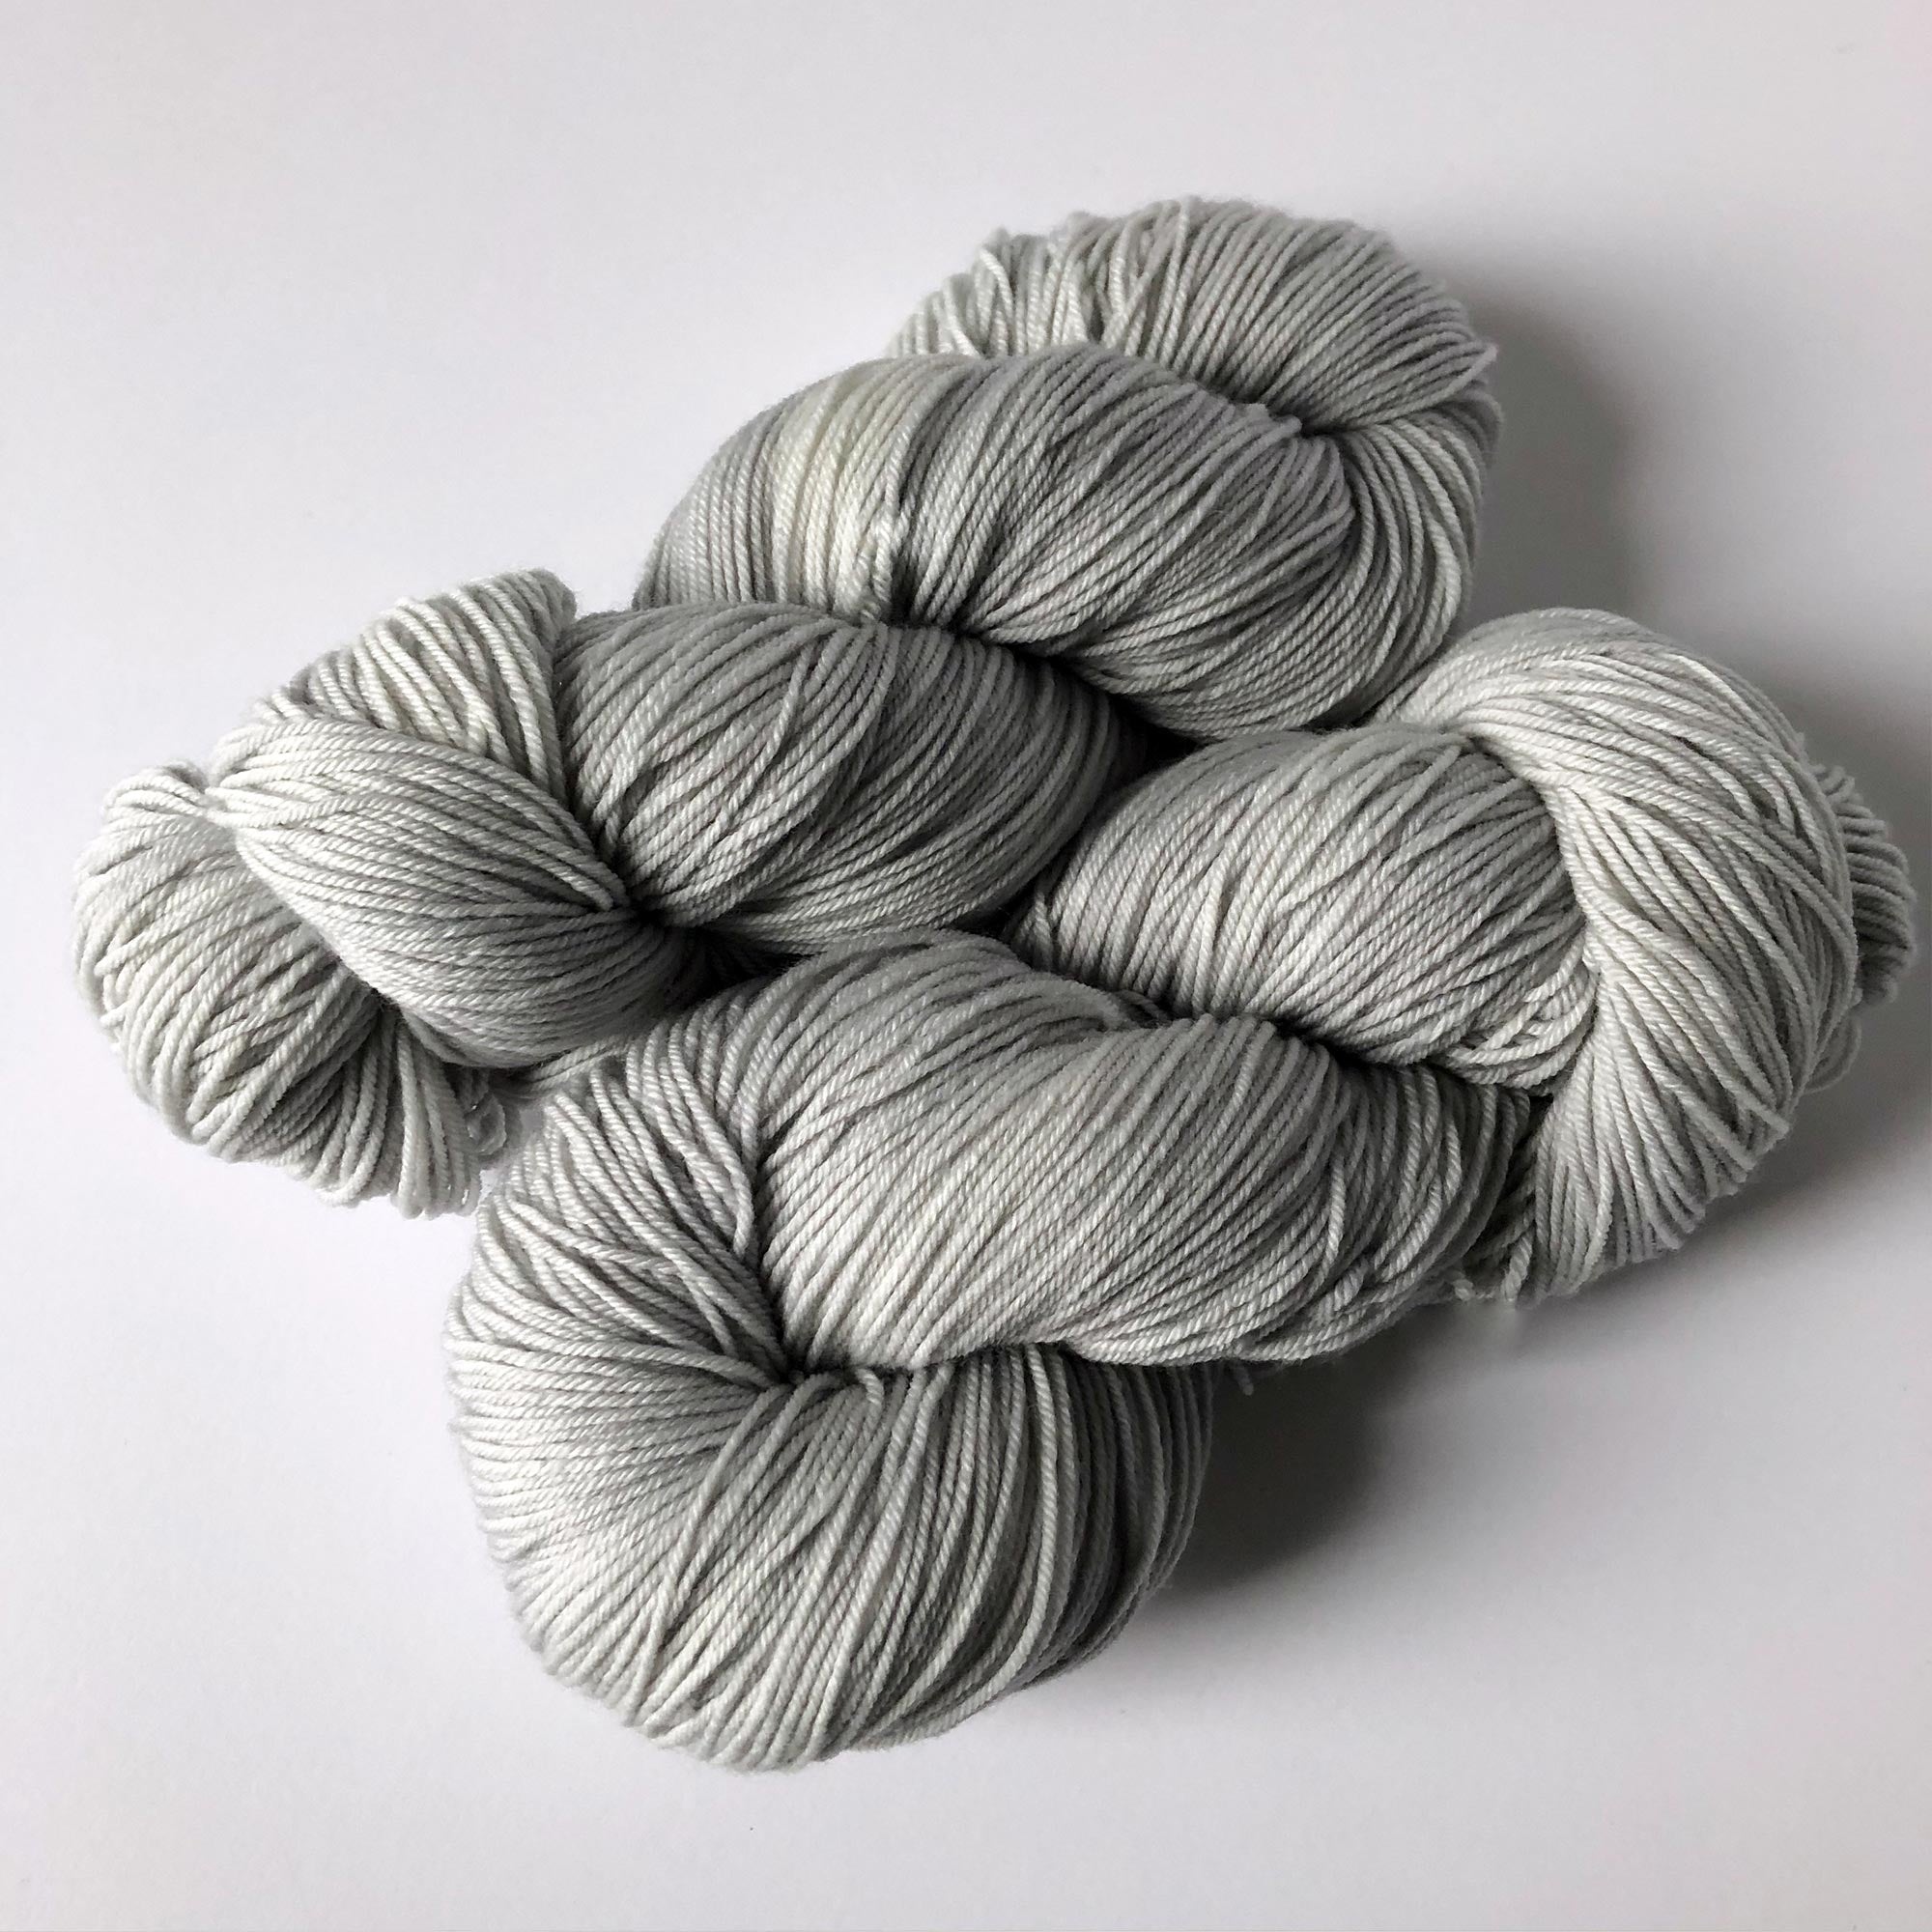 light silver gray slightly variegated yarn - extrafine merino/nylon fingering weight